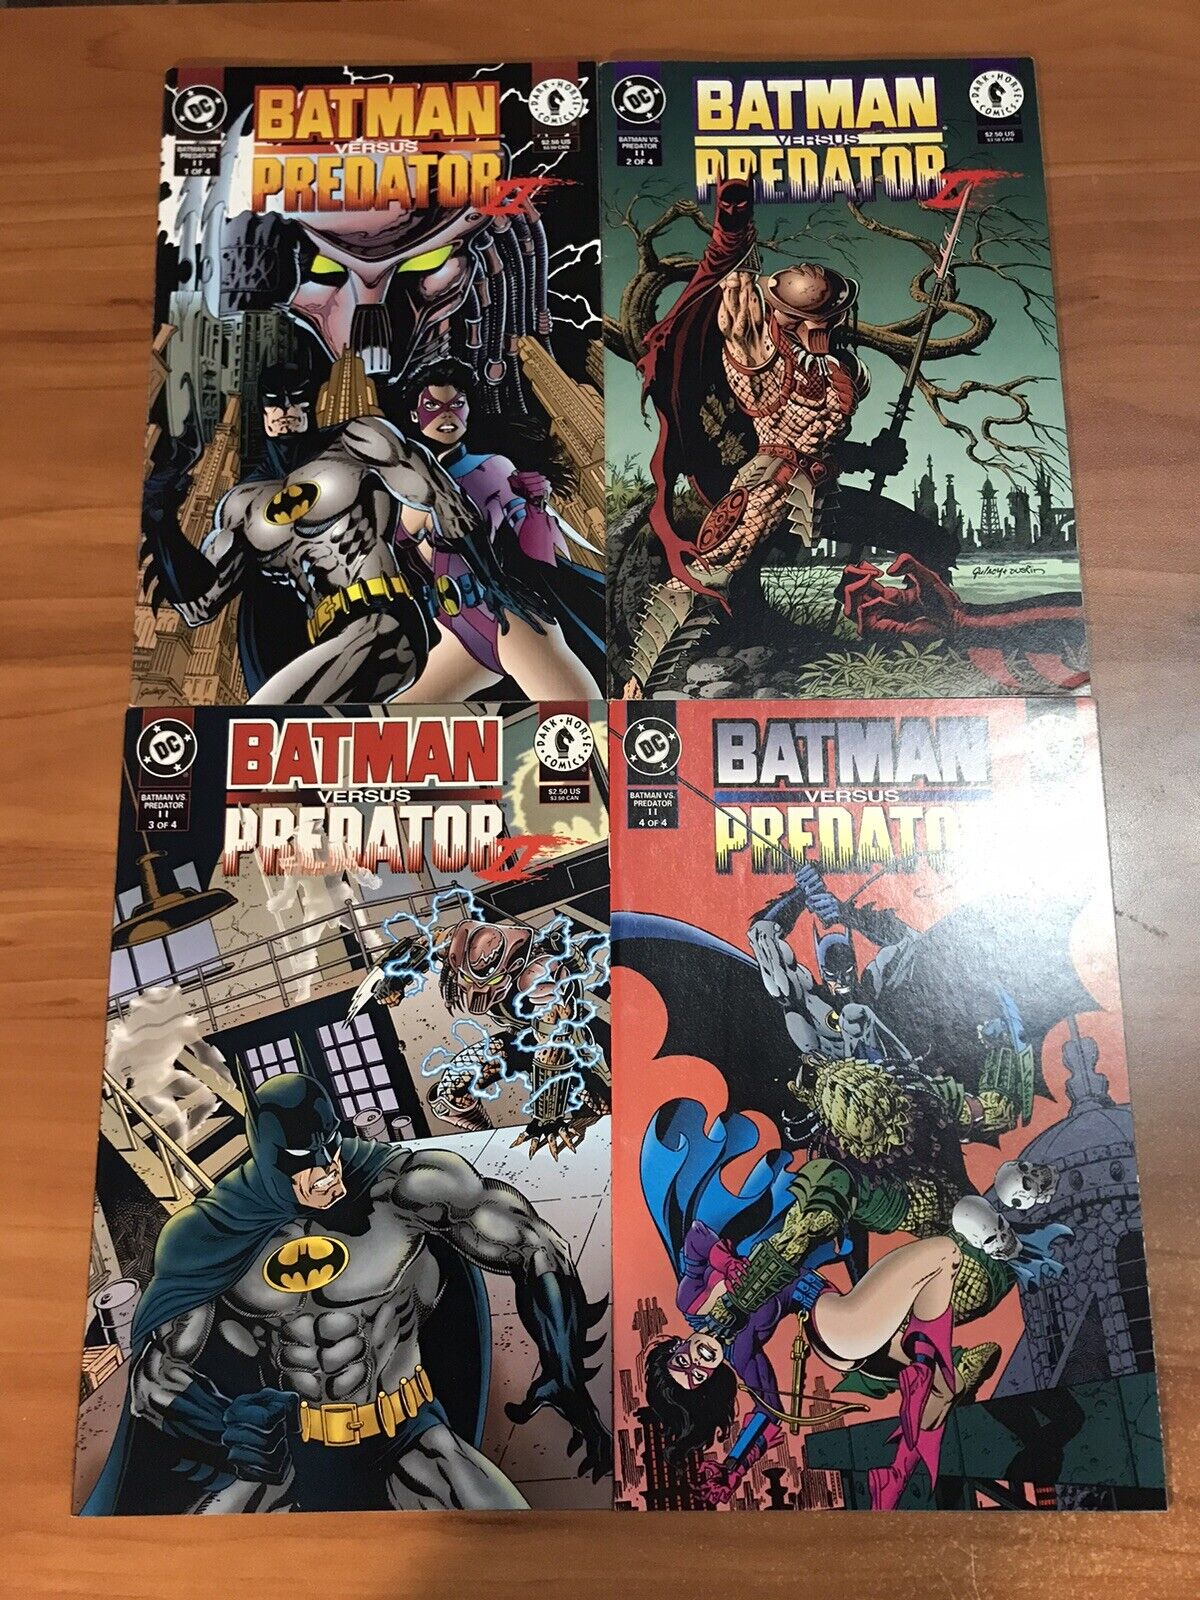 Batman versus Predator II #1-4 Complete Comic Lot Collection